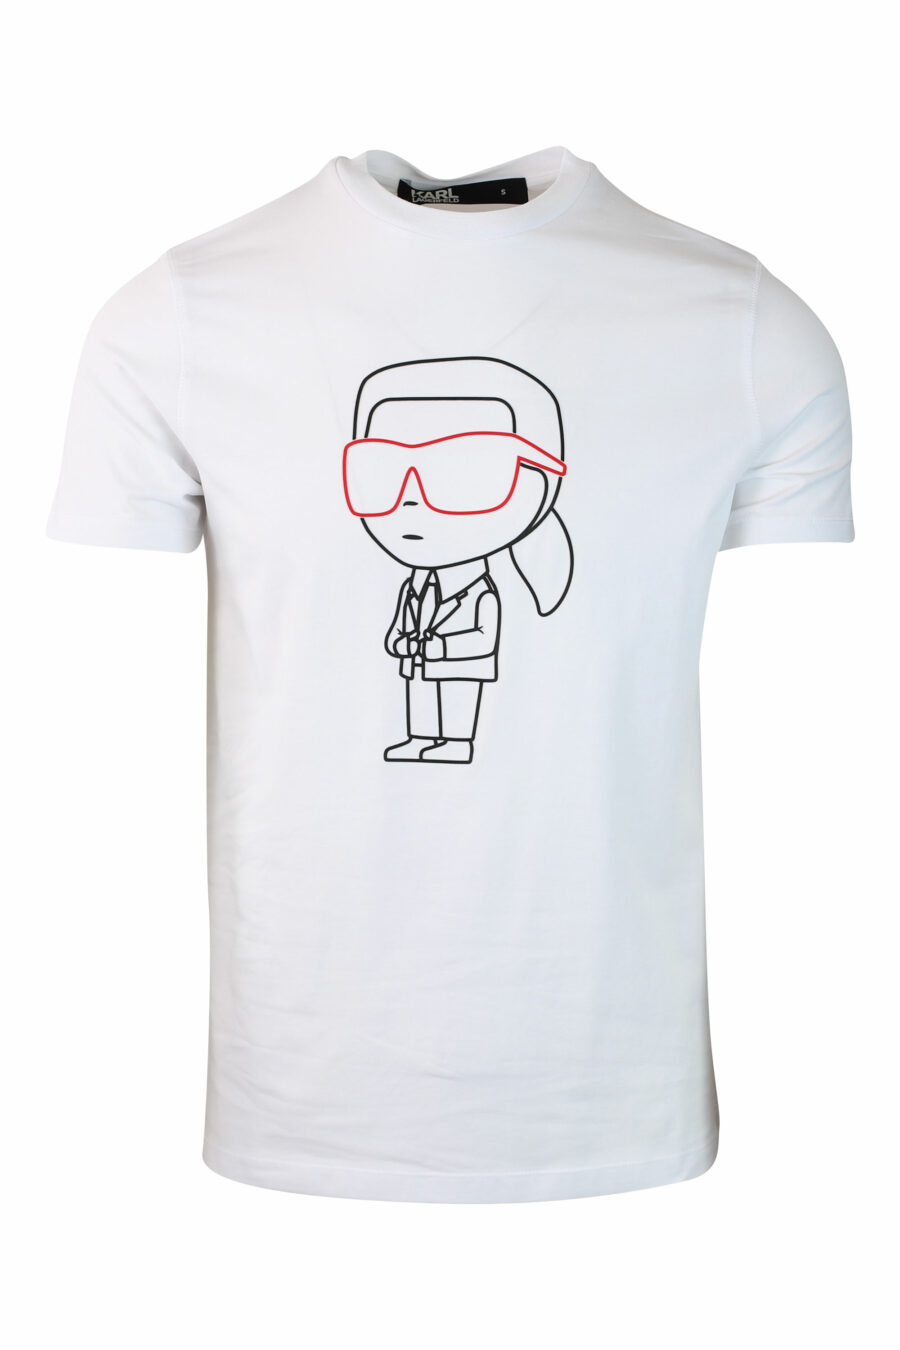 Camiseta blanca con maxilogo "karl" silueta - IMG 0120